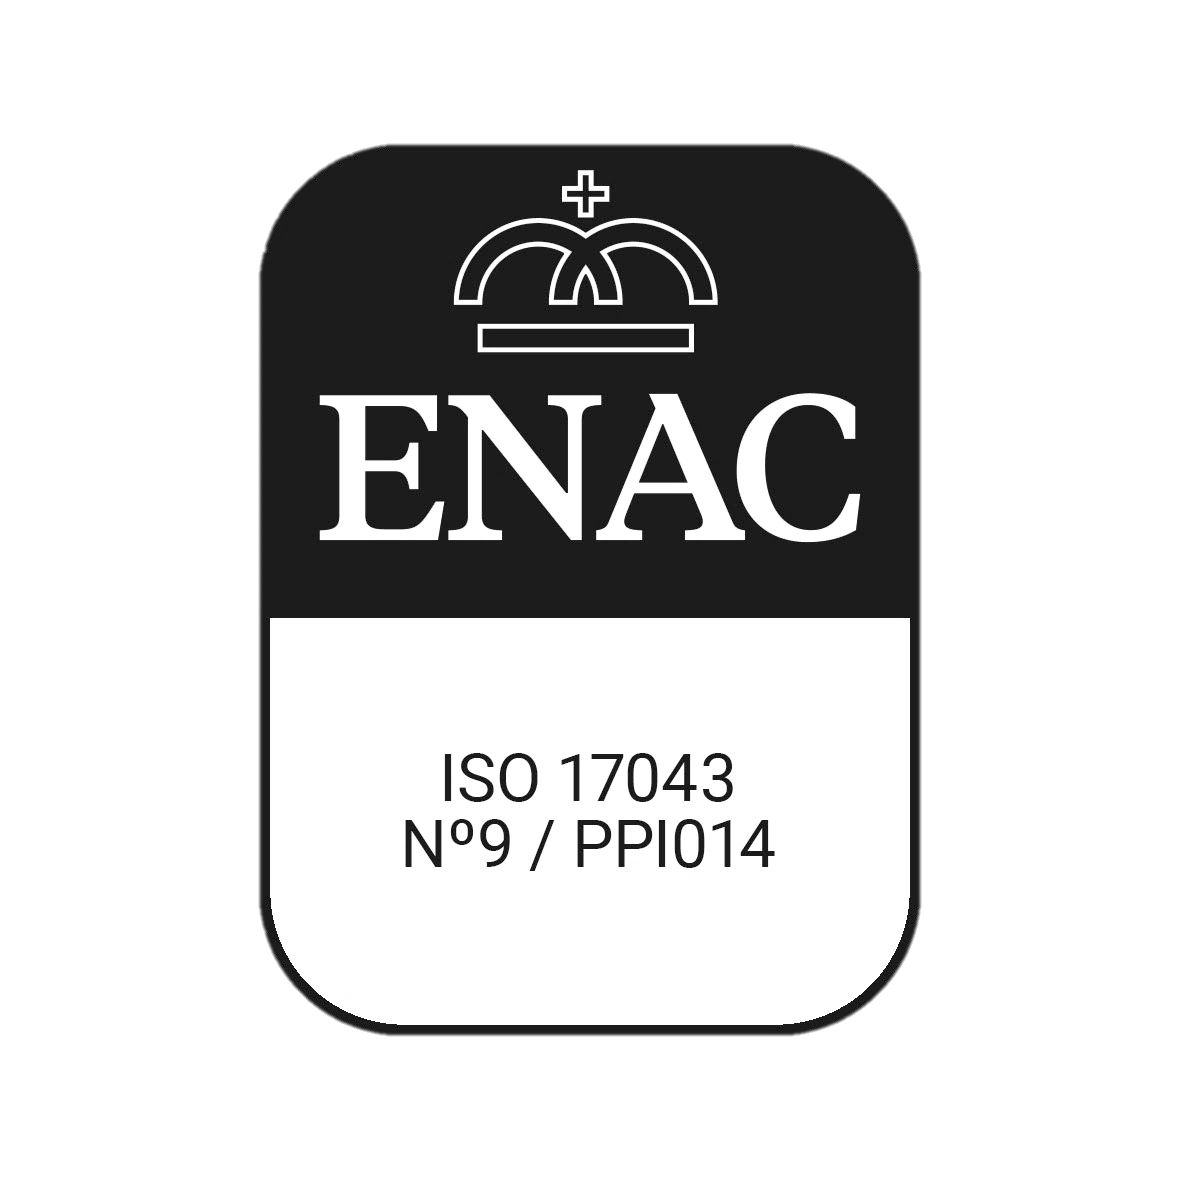 [ENAC certificate]